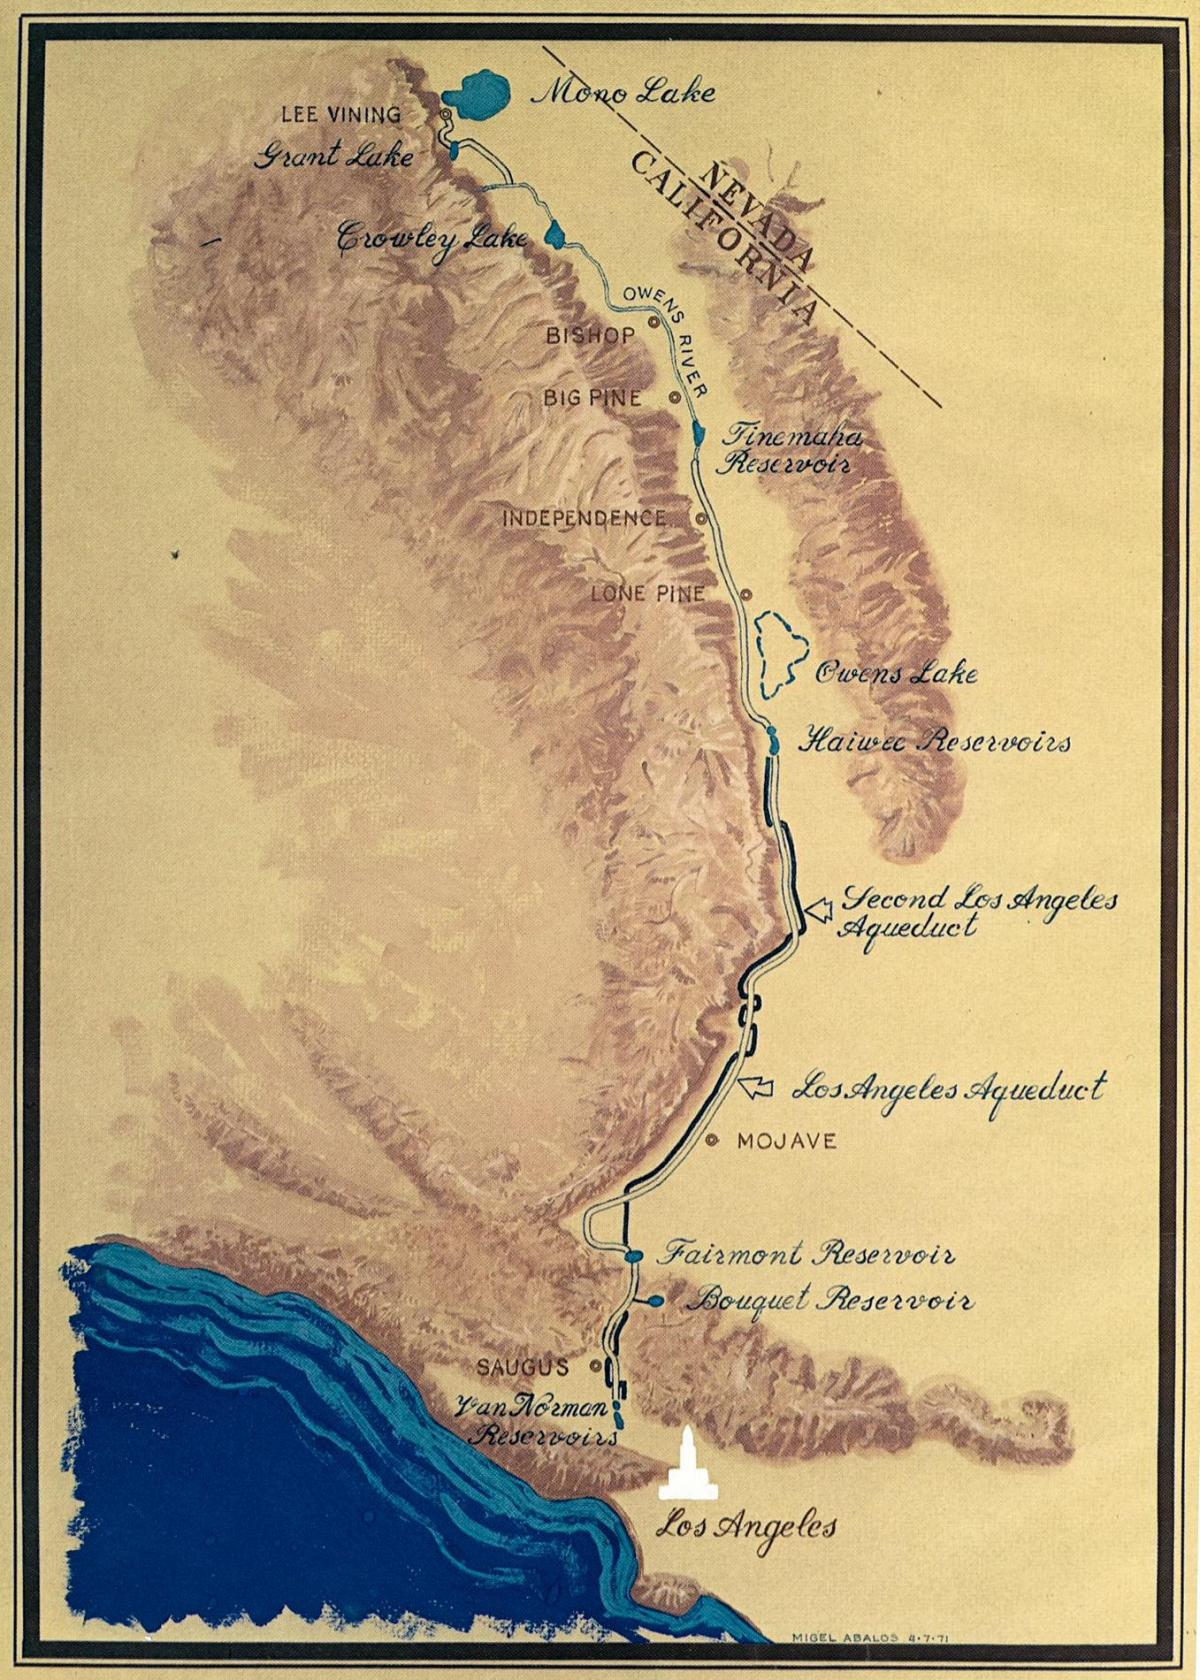 la carte de Los Angeles de l'aqueduc